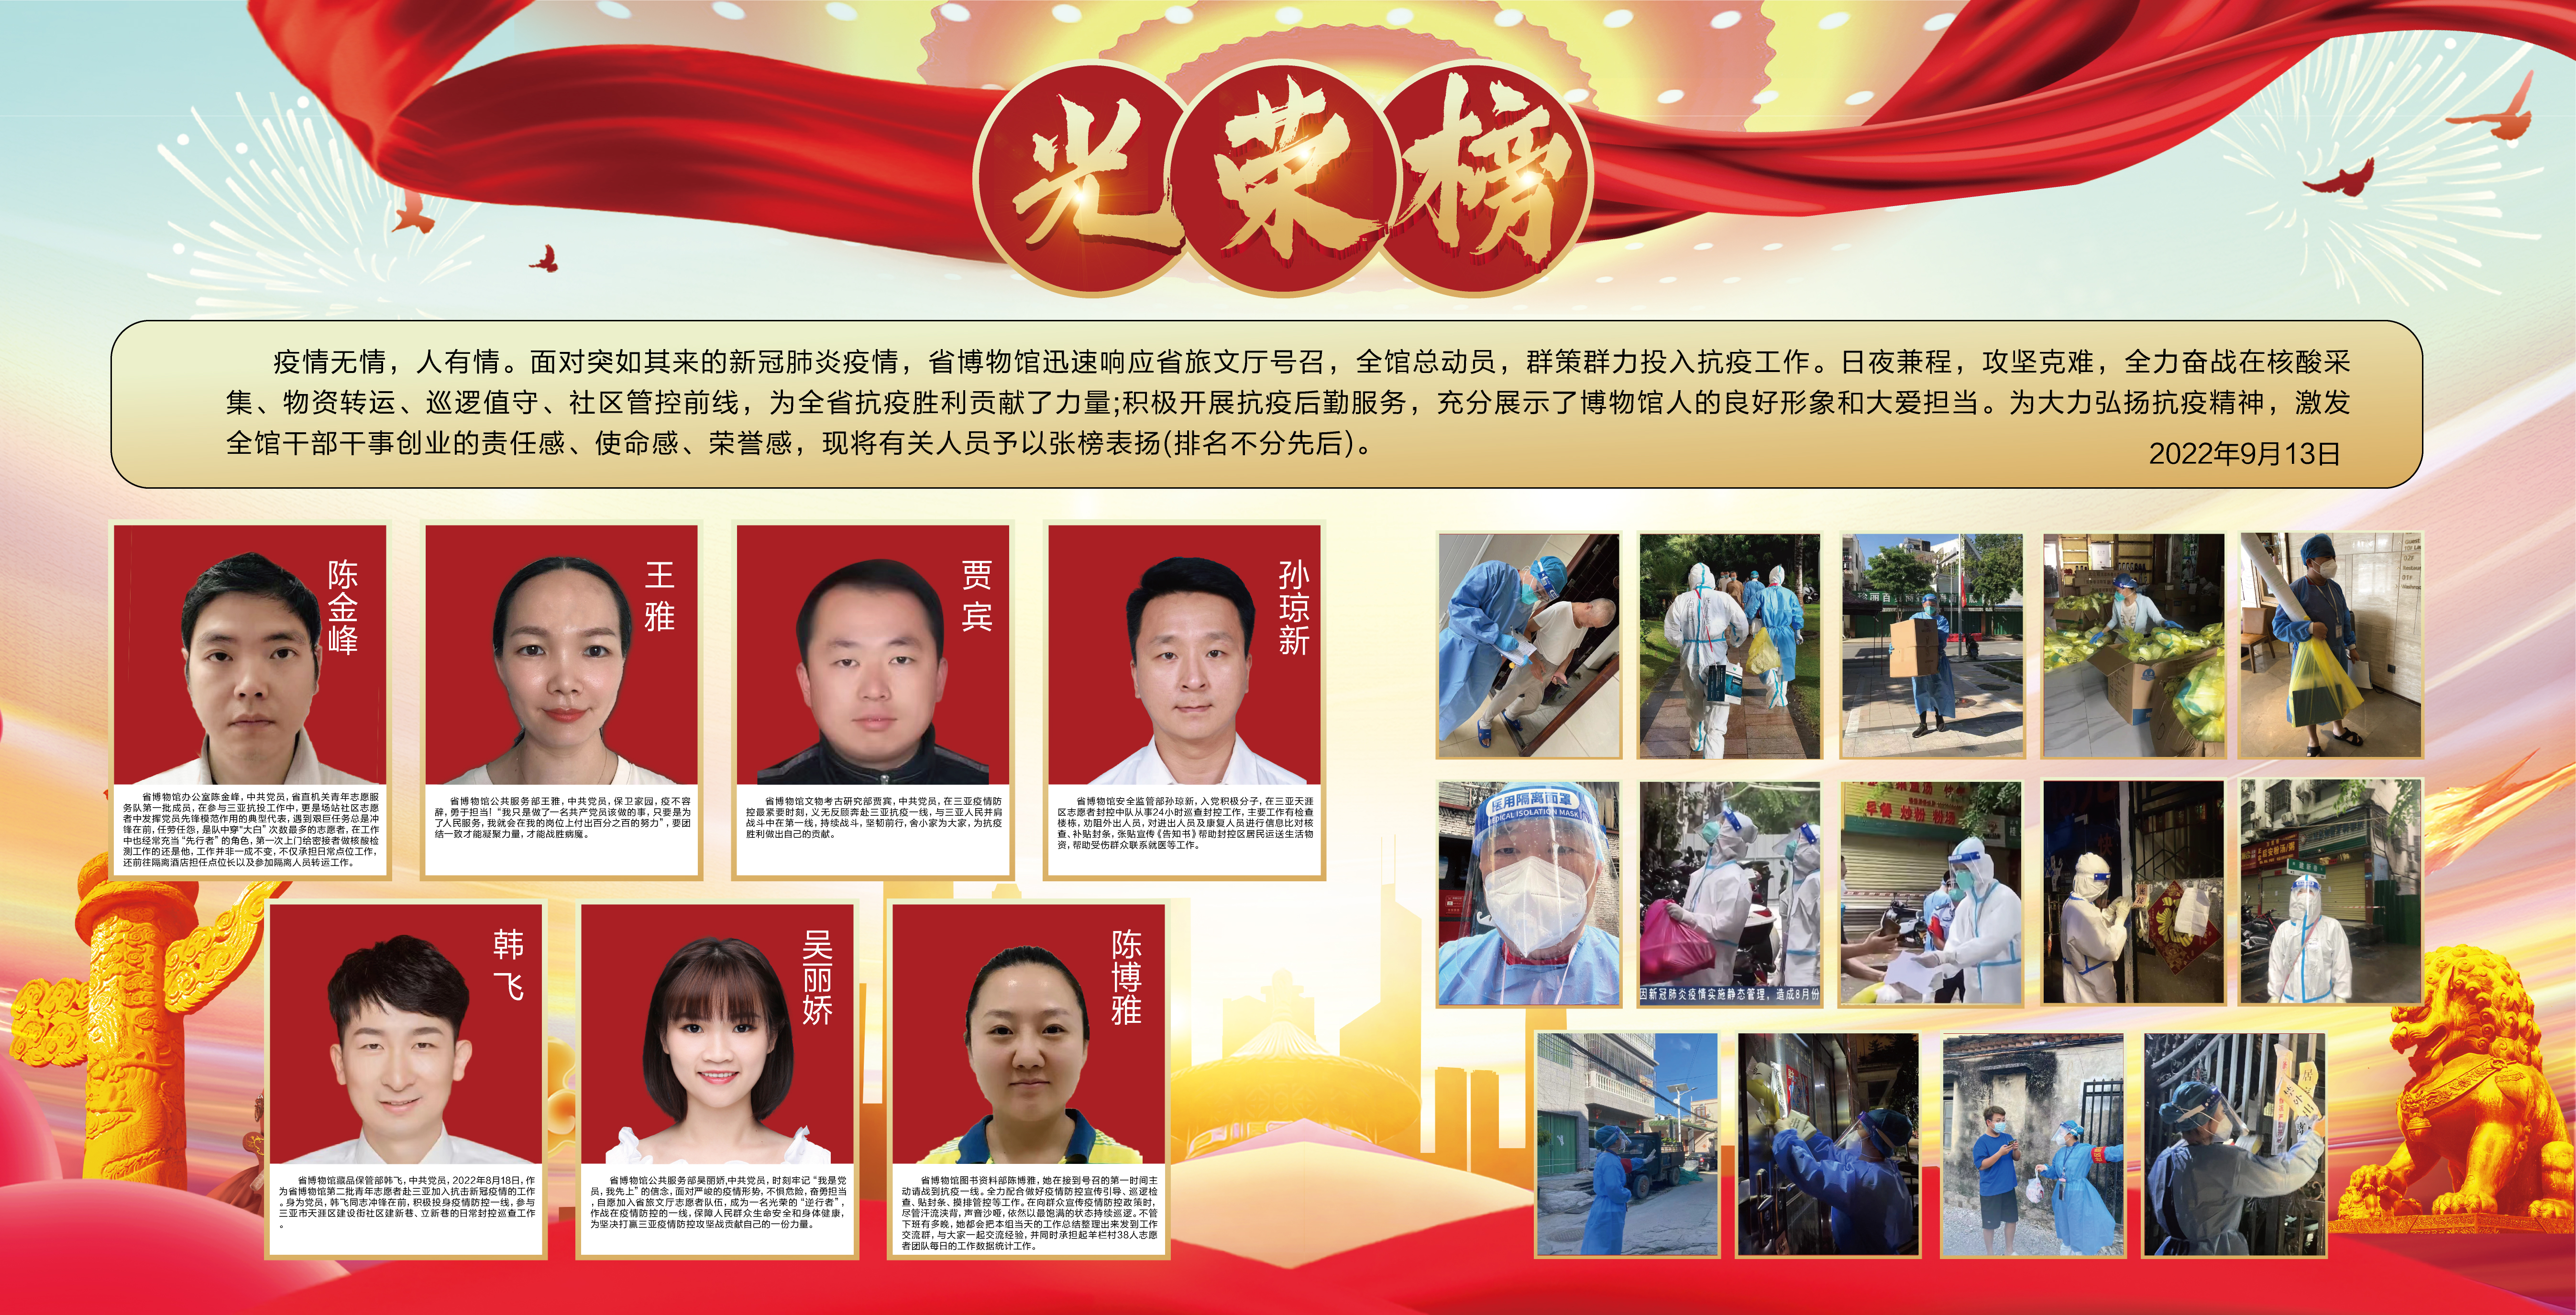 海博咨讯│海南省博物馆对7名参与抗疫志愿工作人员予以张榜表扬